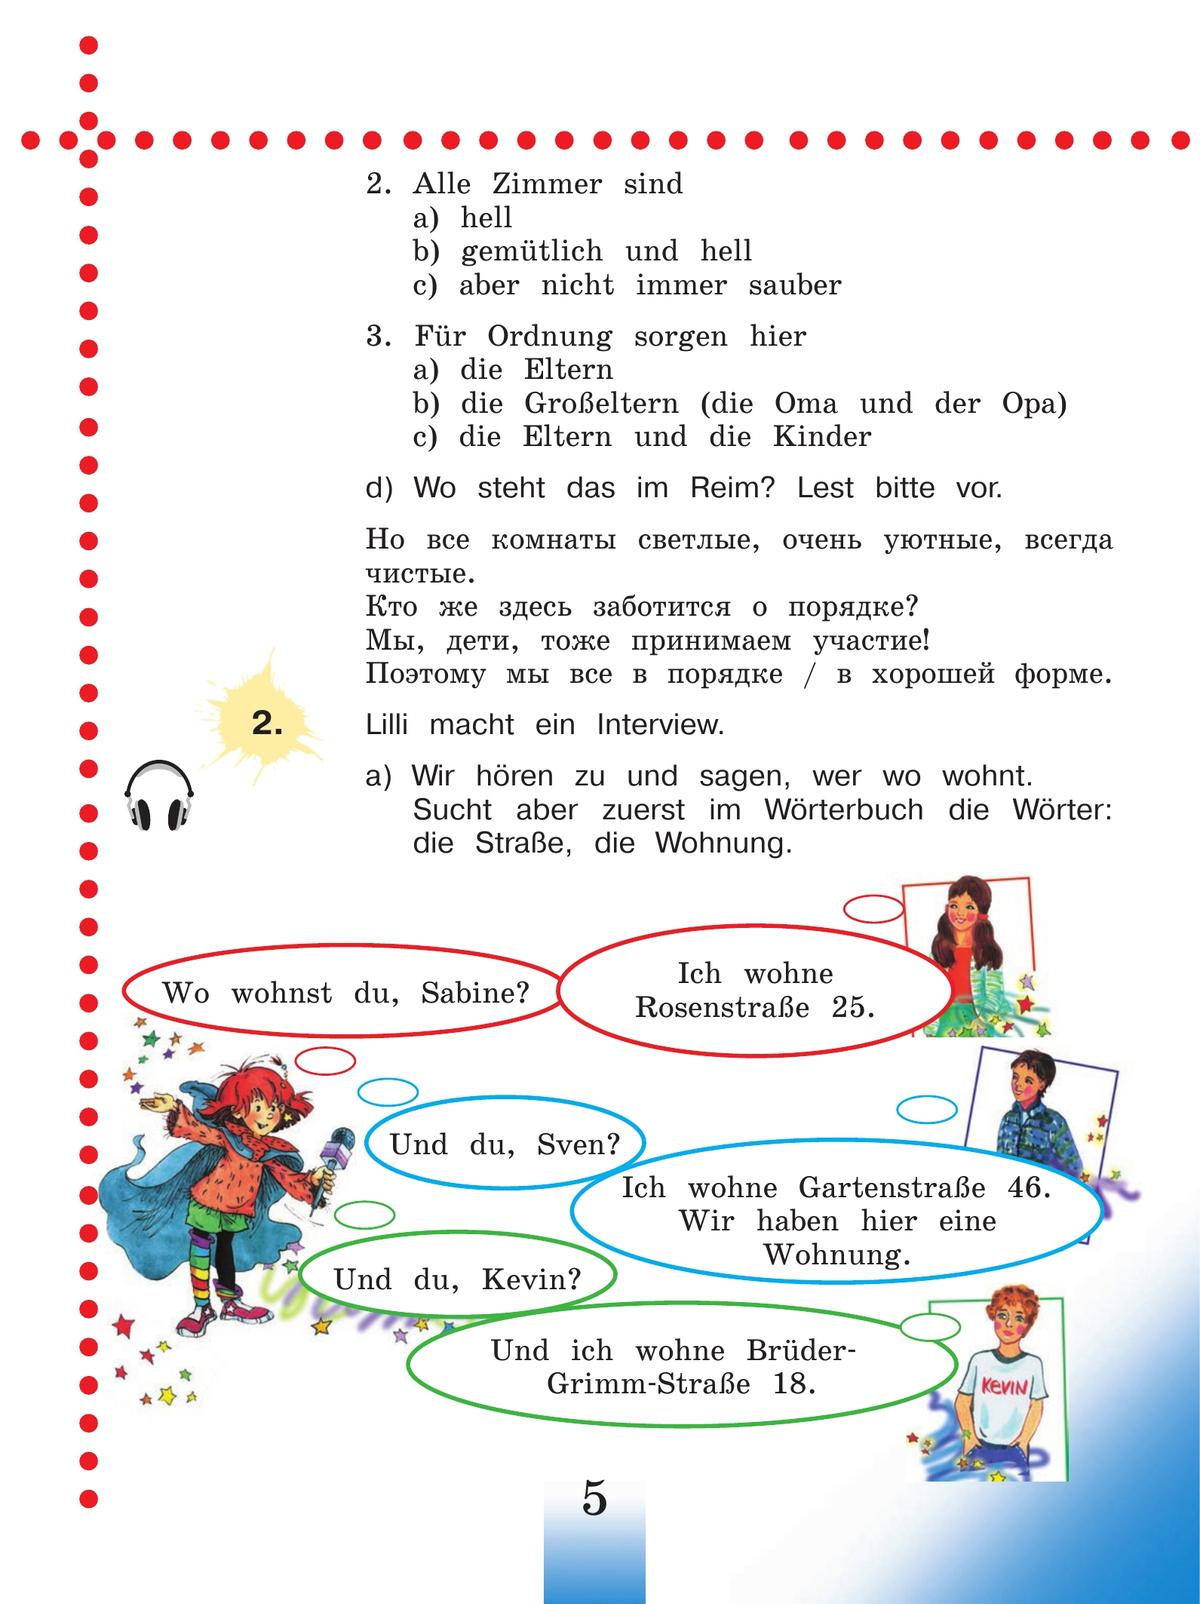 Немецкий язык. 4 класс. Учебник. В 2 ч. Часть 2 4